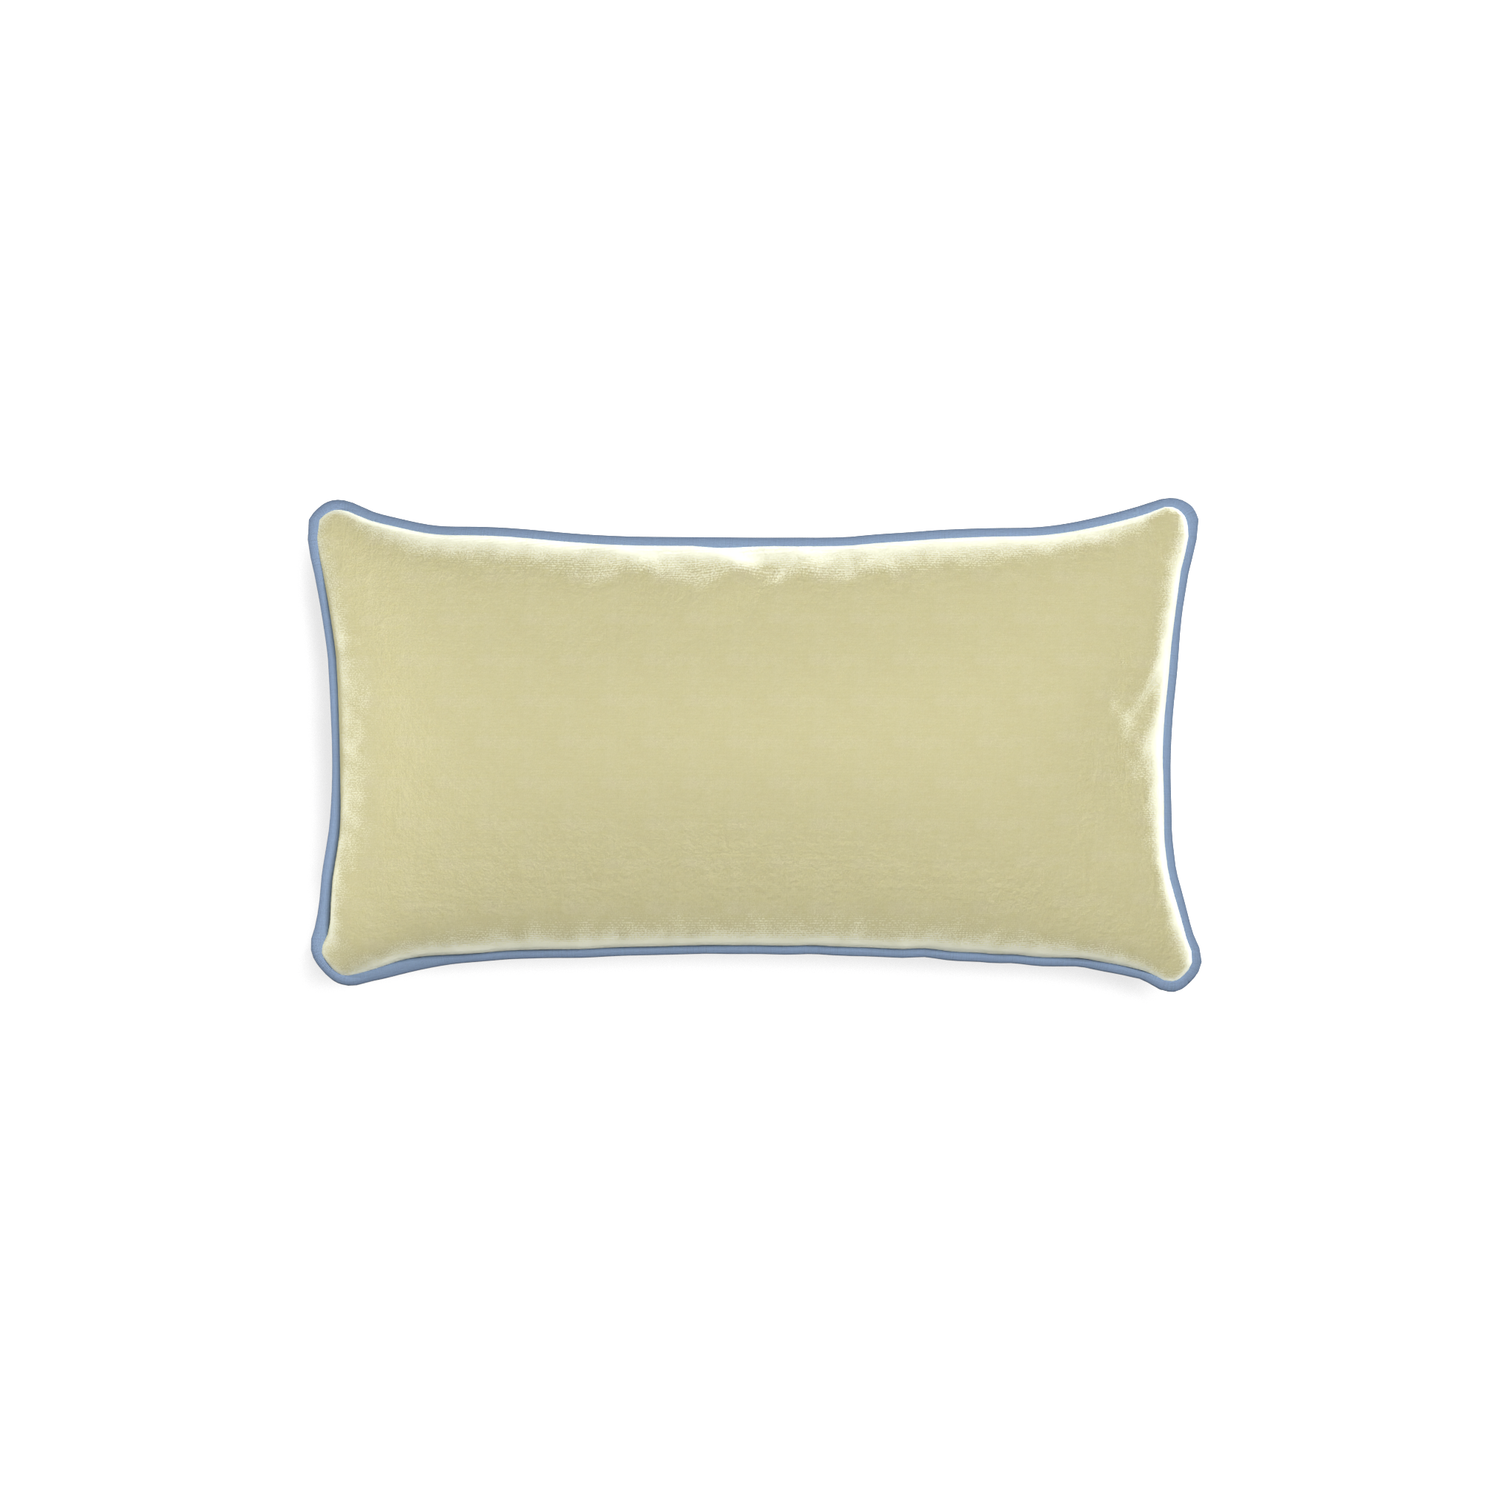 rectangle light green velvet pillow with sky blue piping